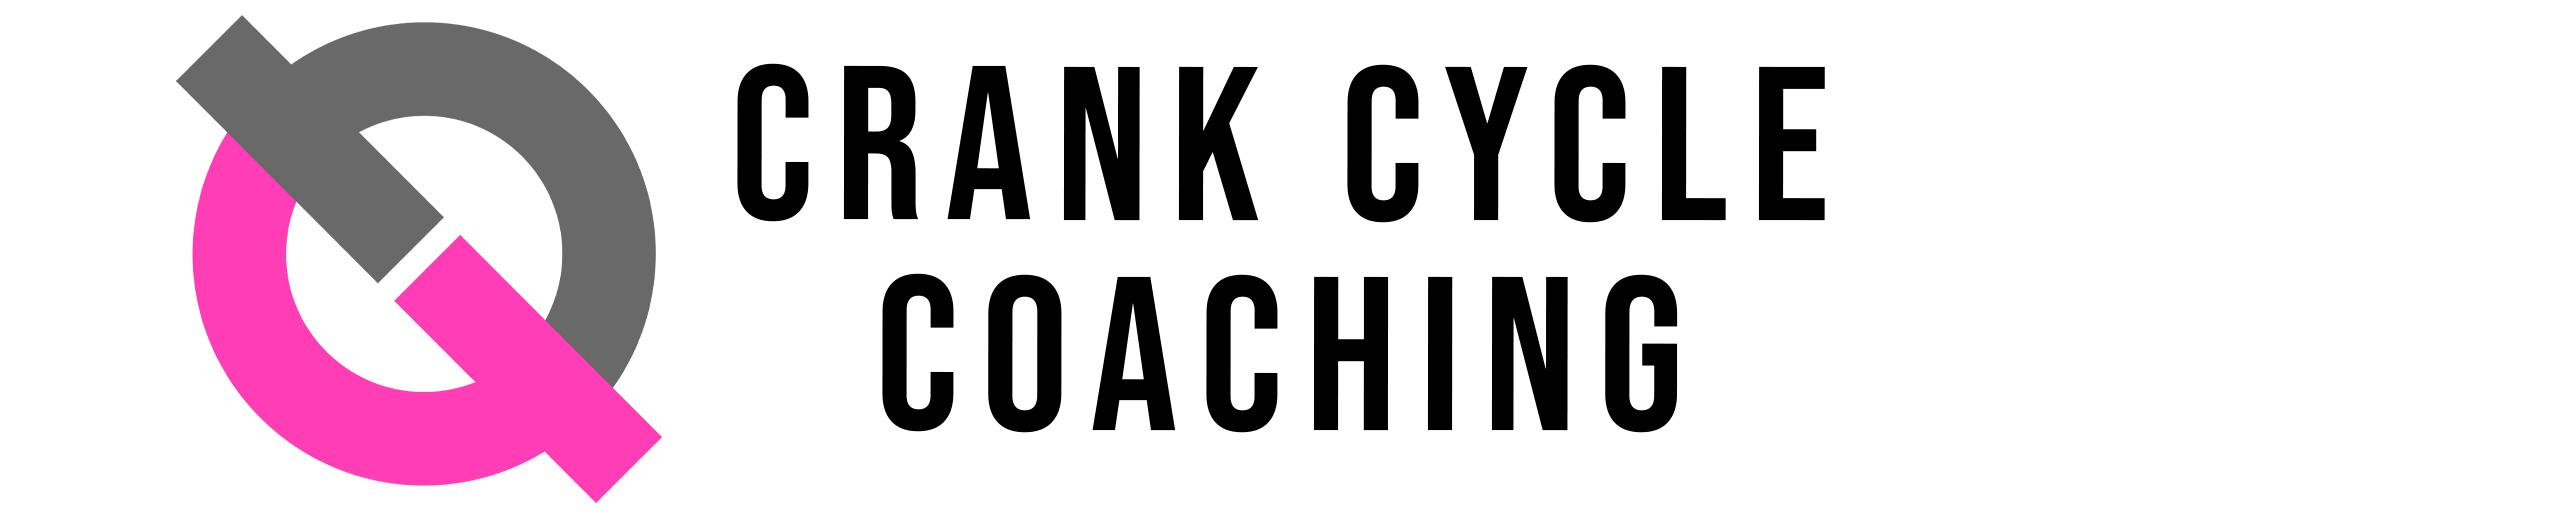 Crank Cycle Coaching Logo